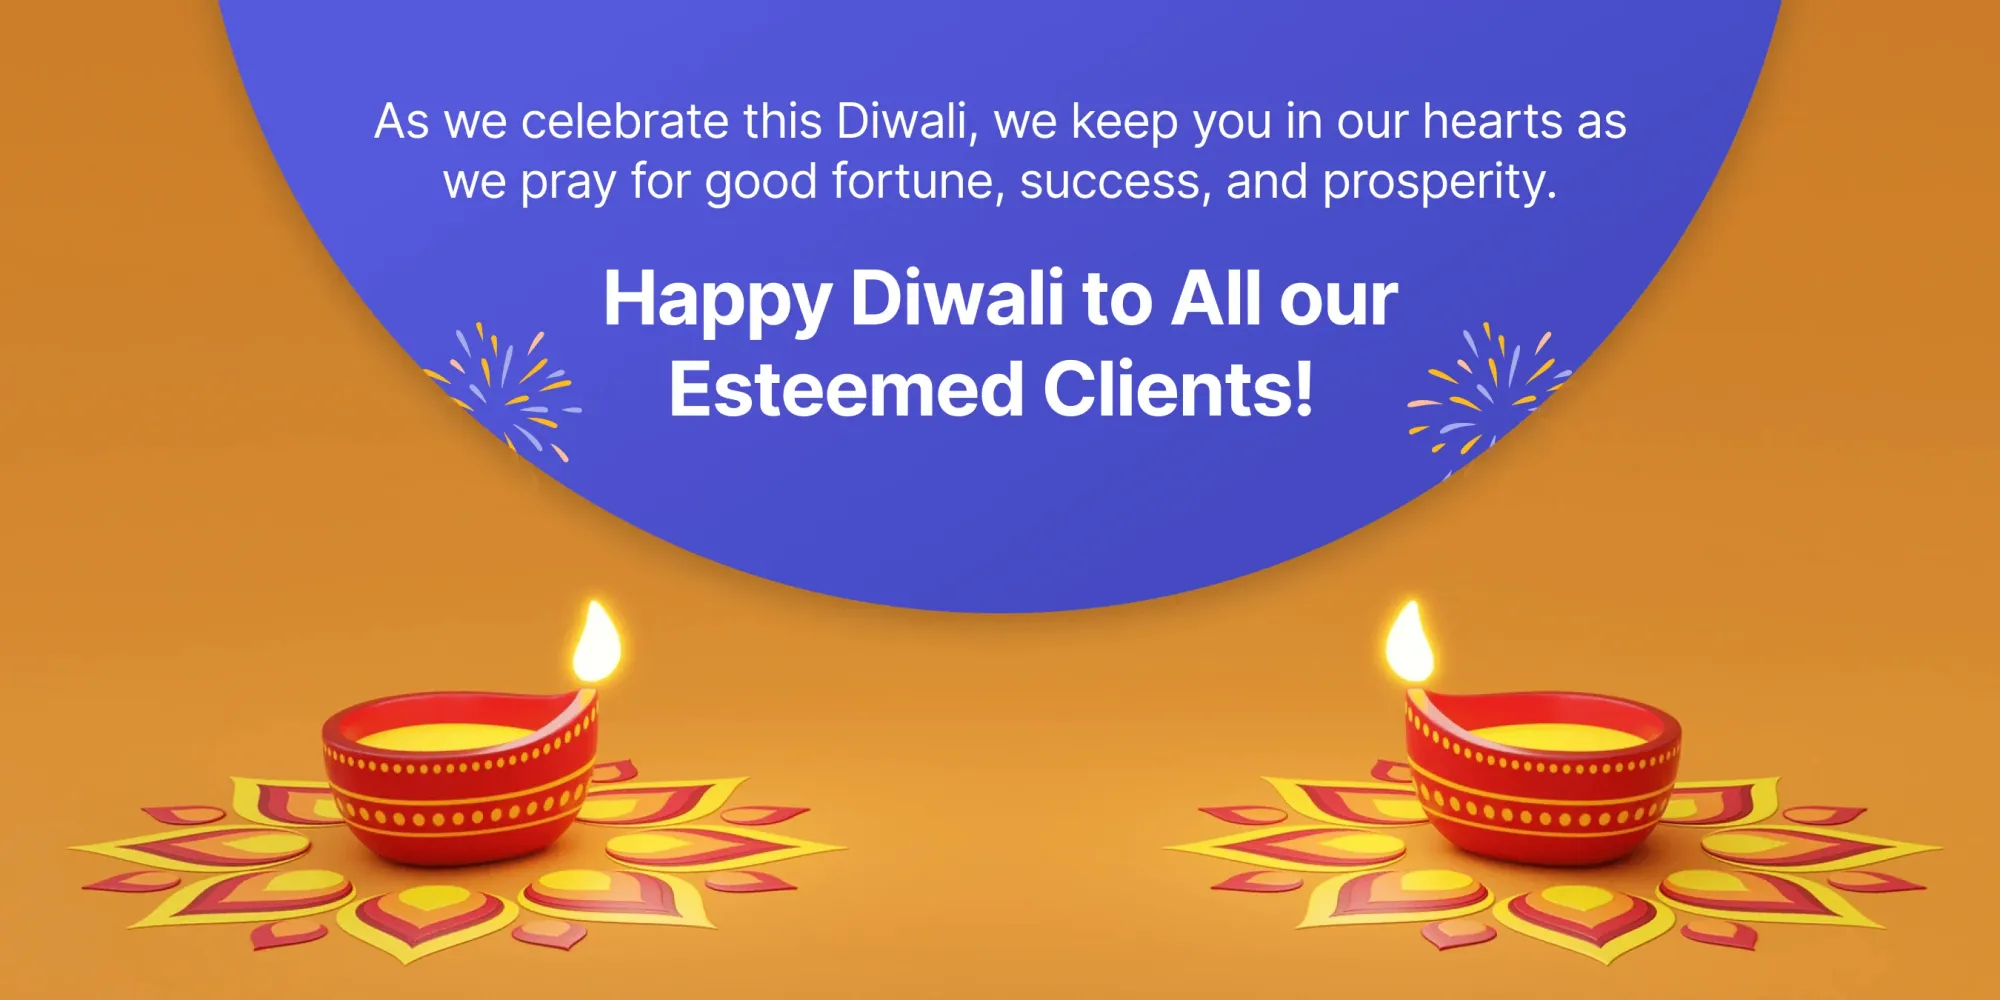 I migliori auguri di Diwali per i clienti